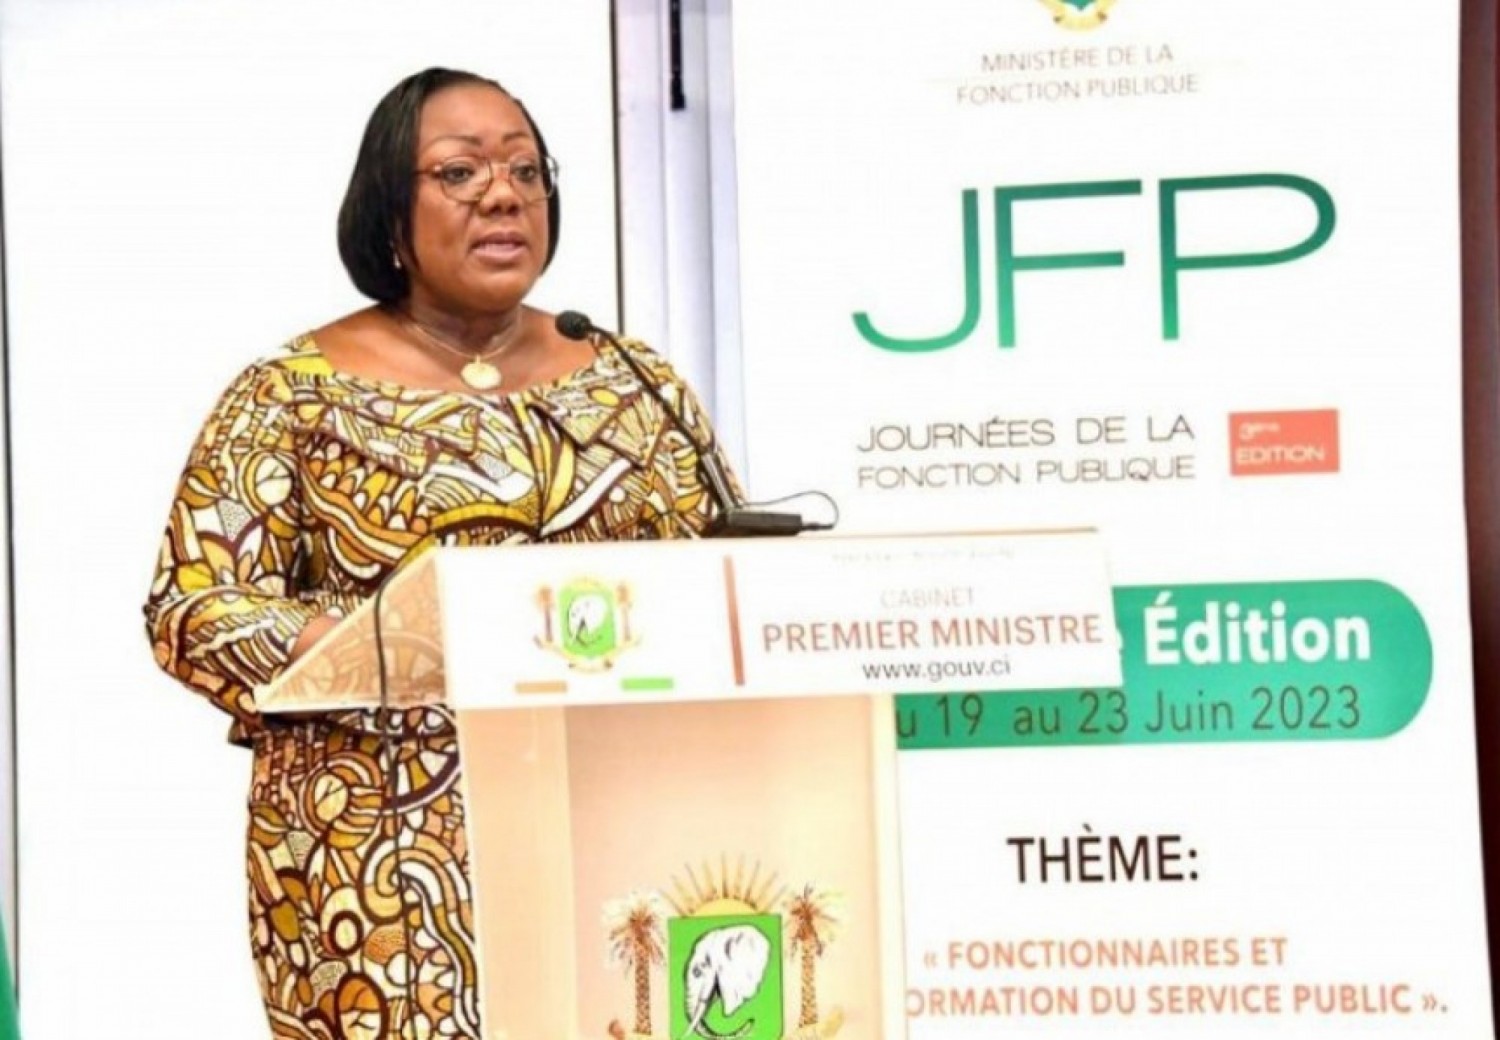 Côte d'Ivoire : Lancement de la troisième édition des Journées de la Fonction Publique, Anne Ouloto relève les principaux axes